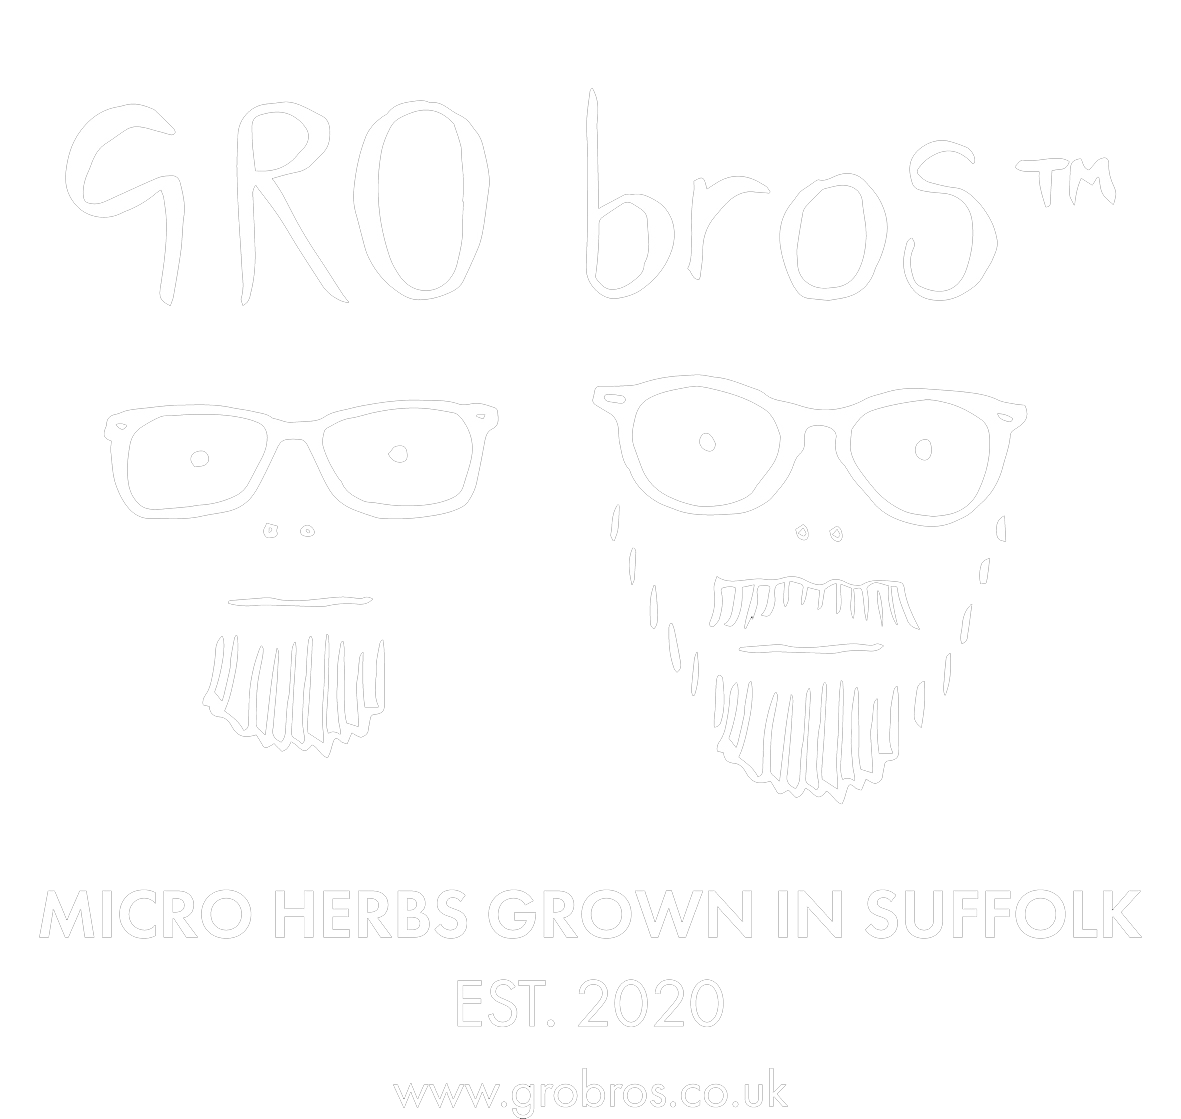 GRObros - Microherbs Grown in Suffolk, UK